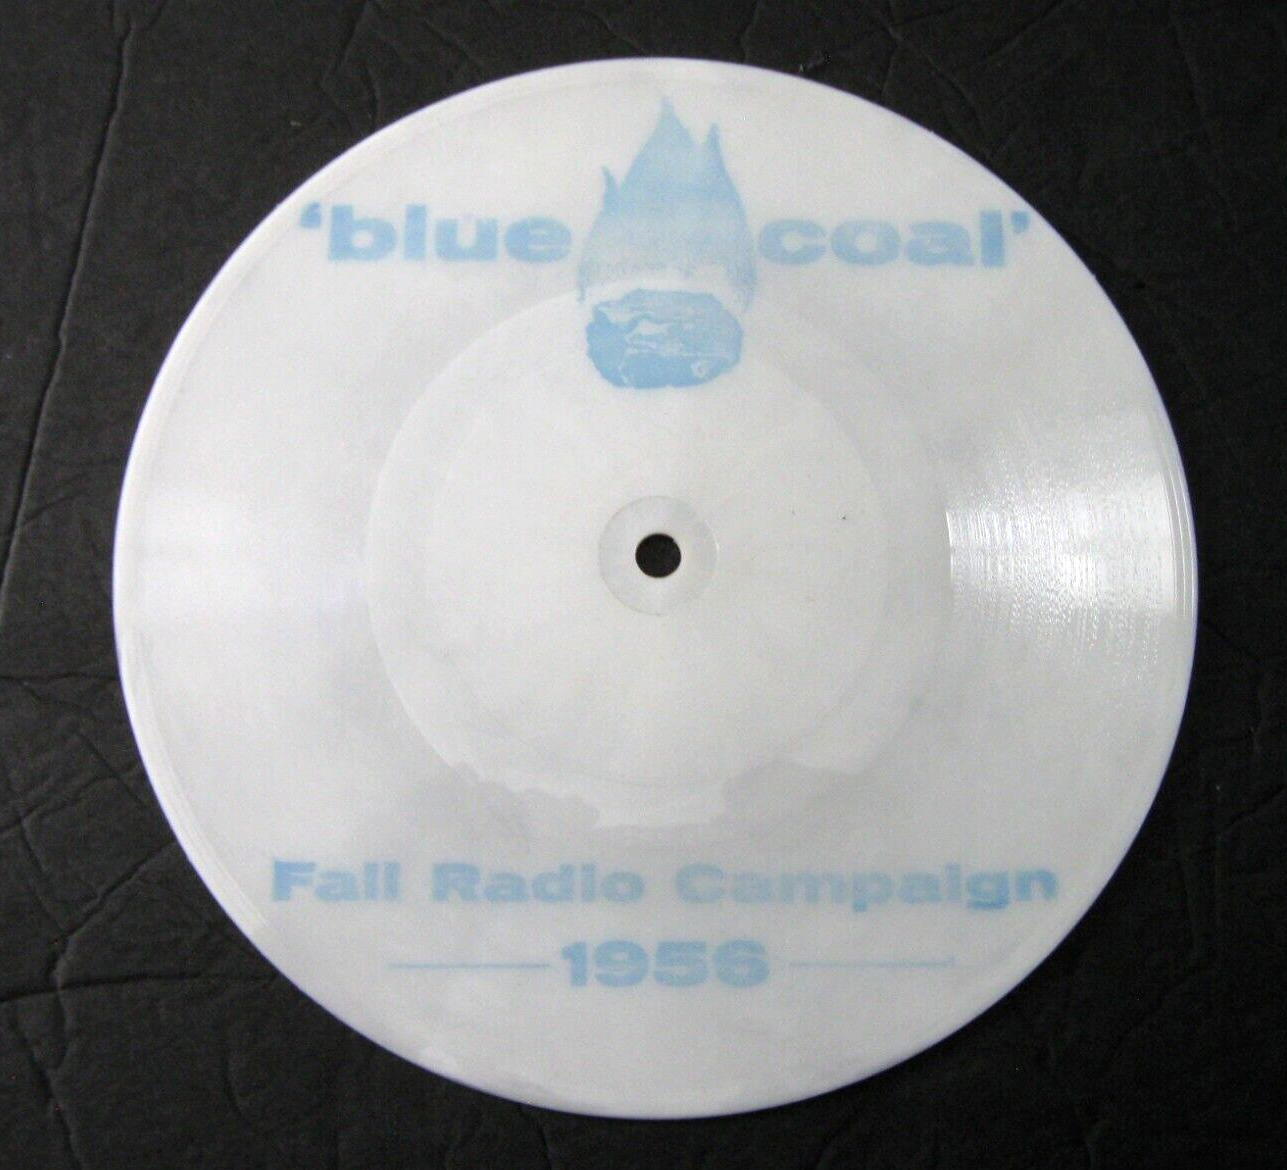 BLUE COAL Fall Radio Campaign 1956 78 RPM 7 \